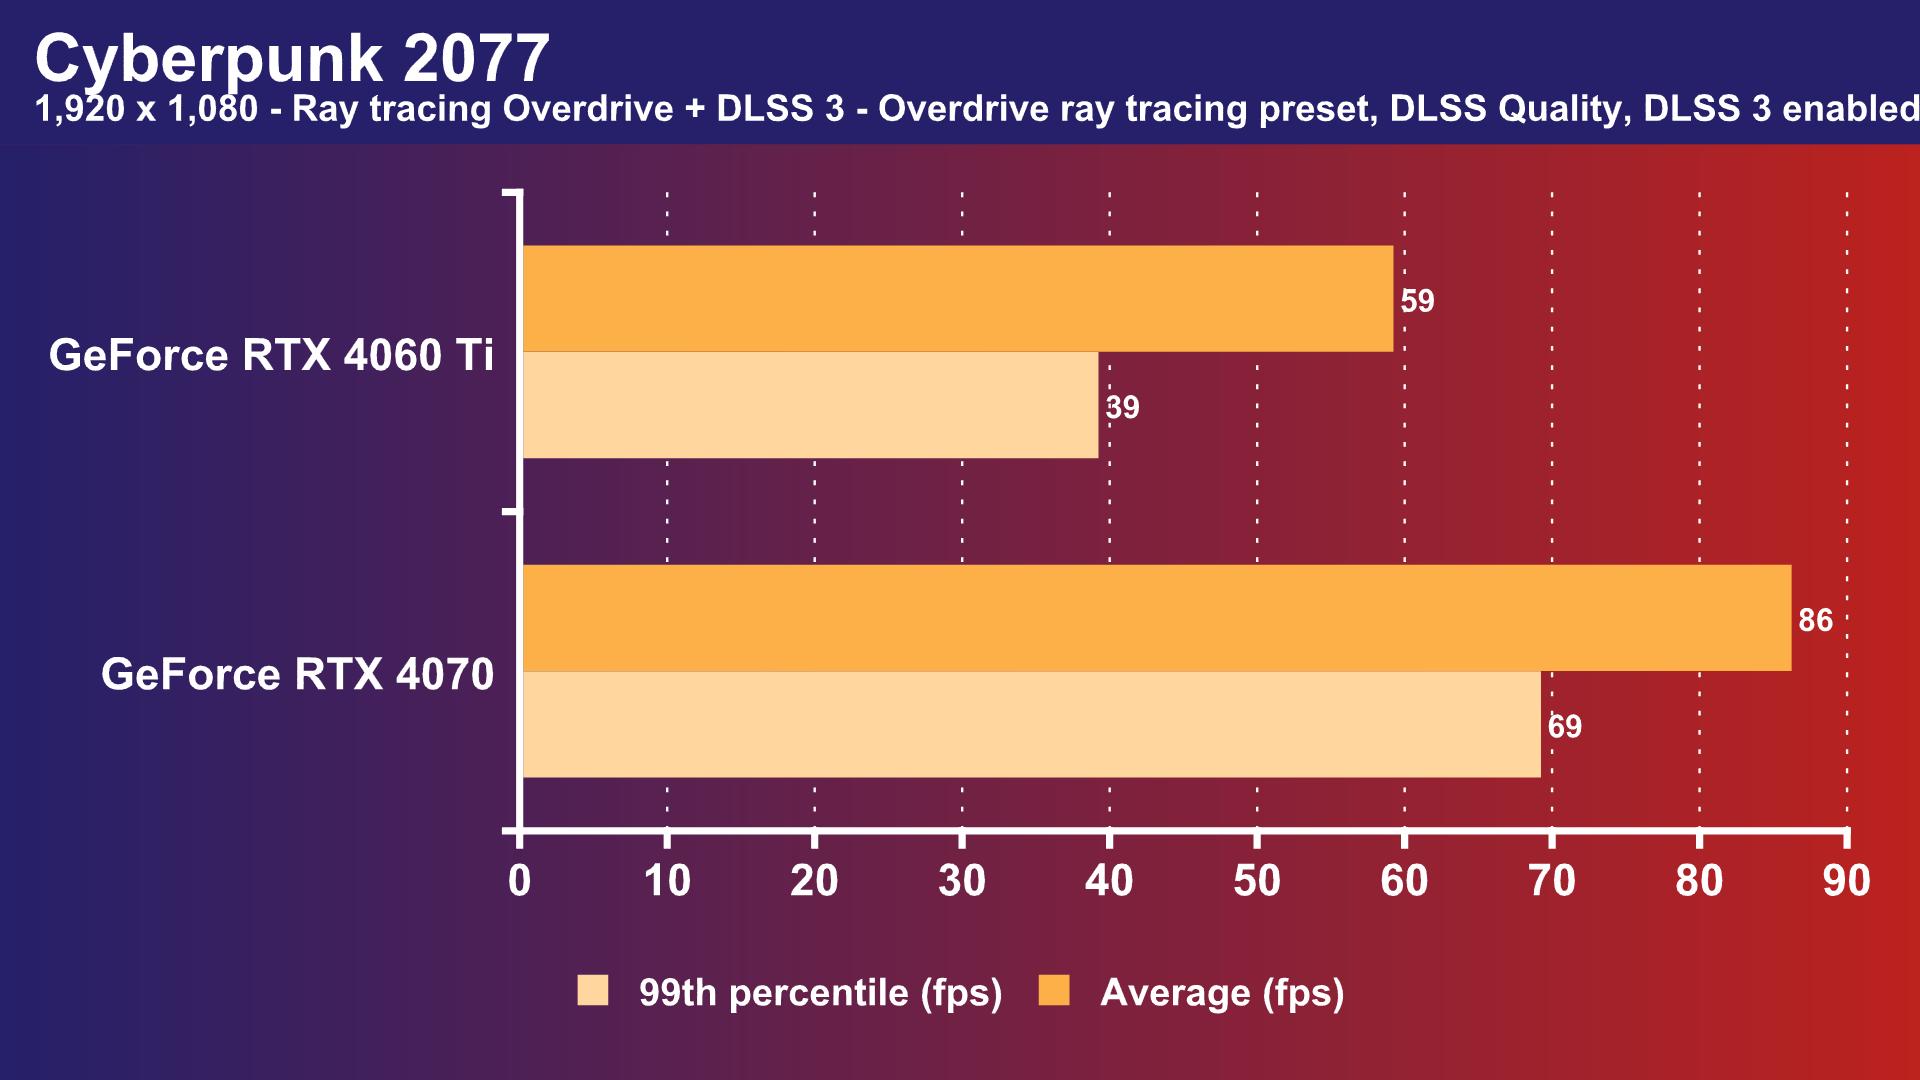 Nvidia GeForce RTX 4060 Ti vs RTX 3060 Ti vs AMD Radeon RX 6700 XT